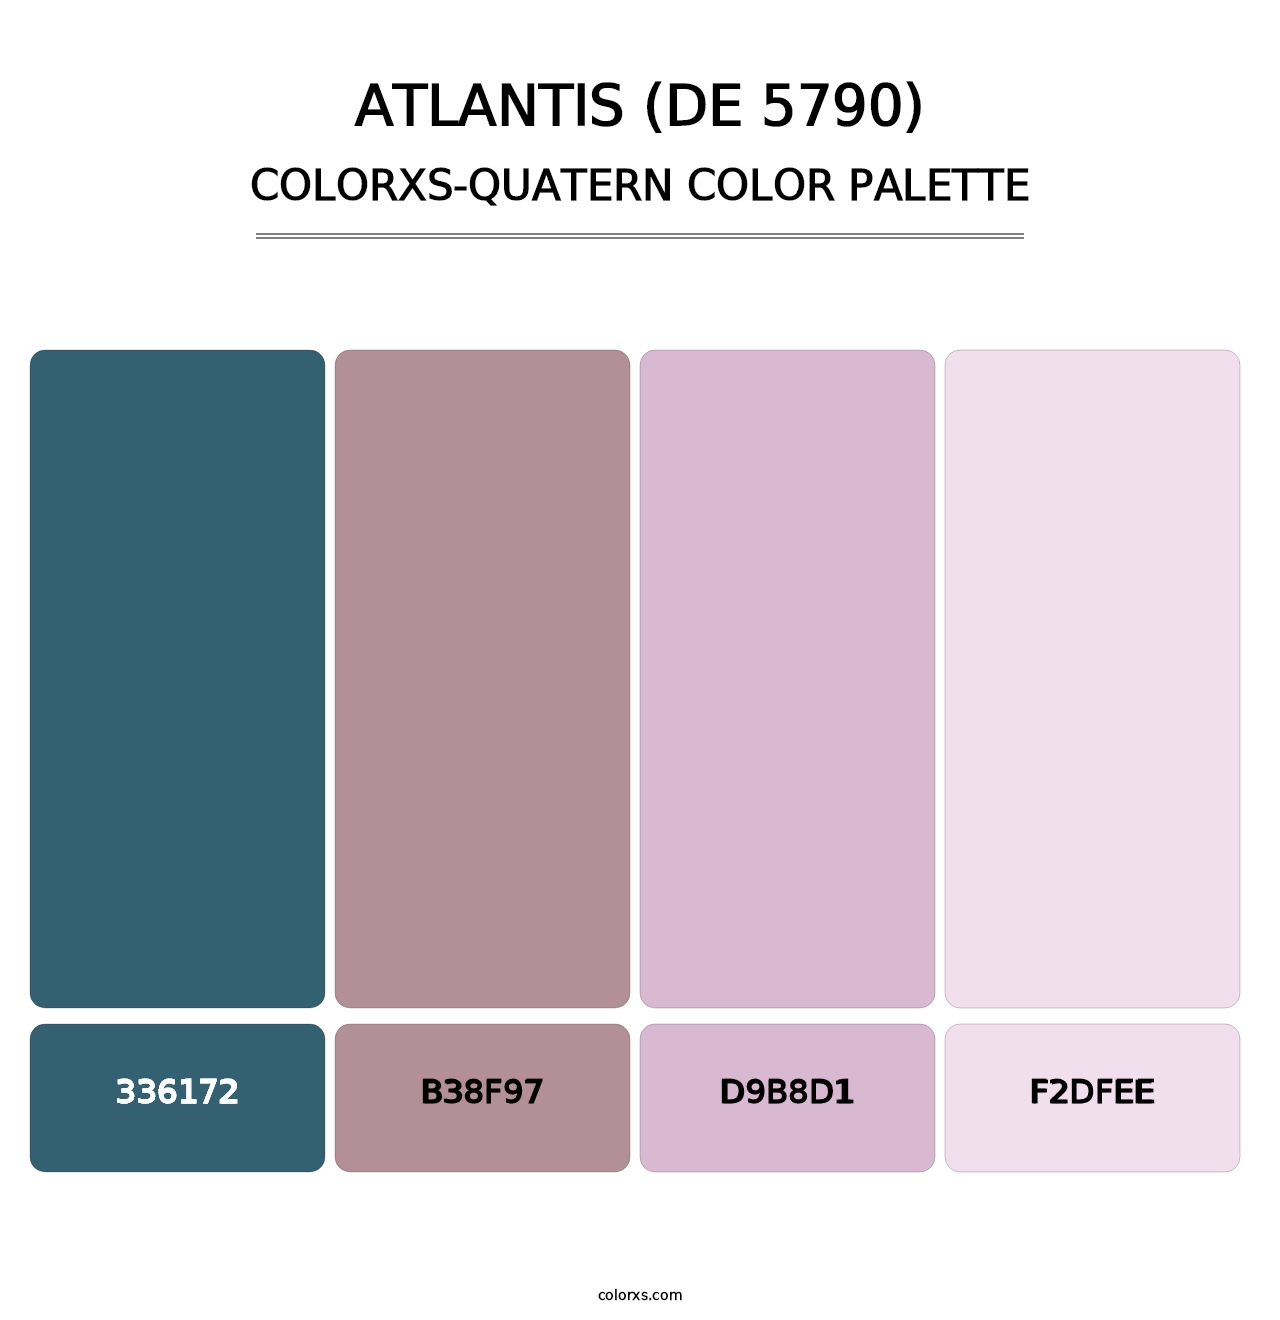 Atlantis (DE 5790) - Colorxs Quatern Palette